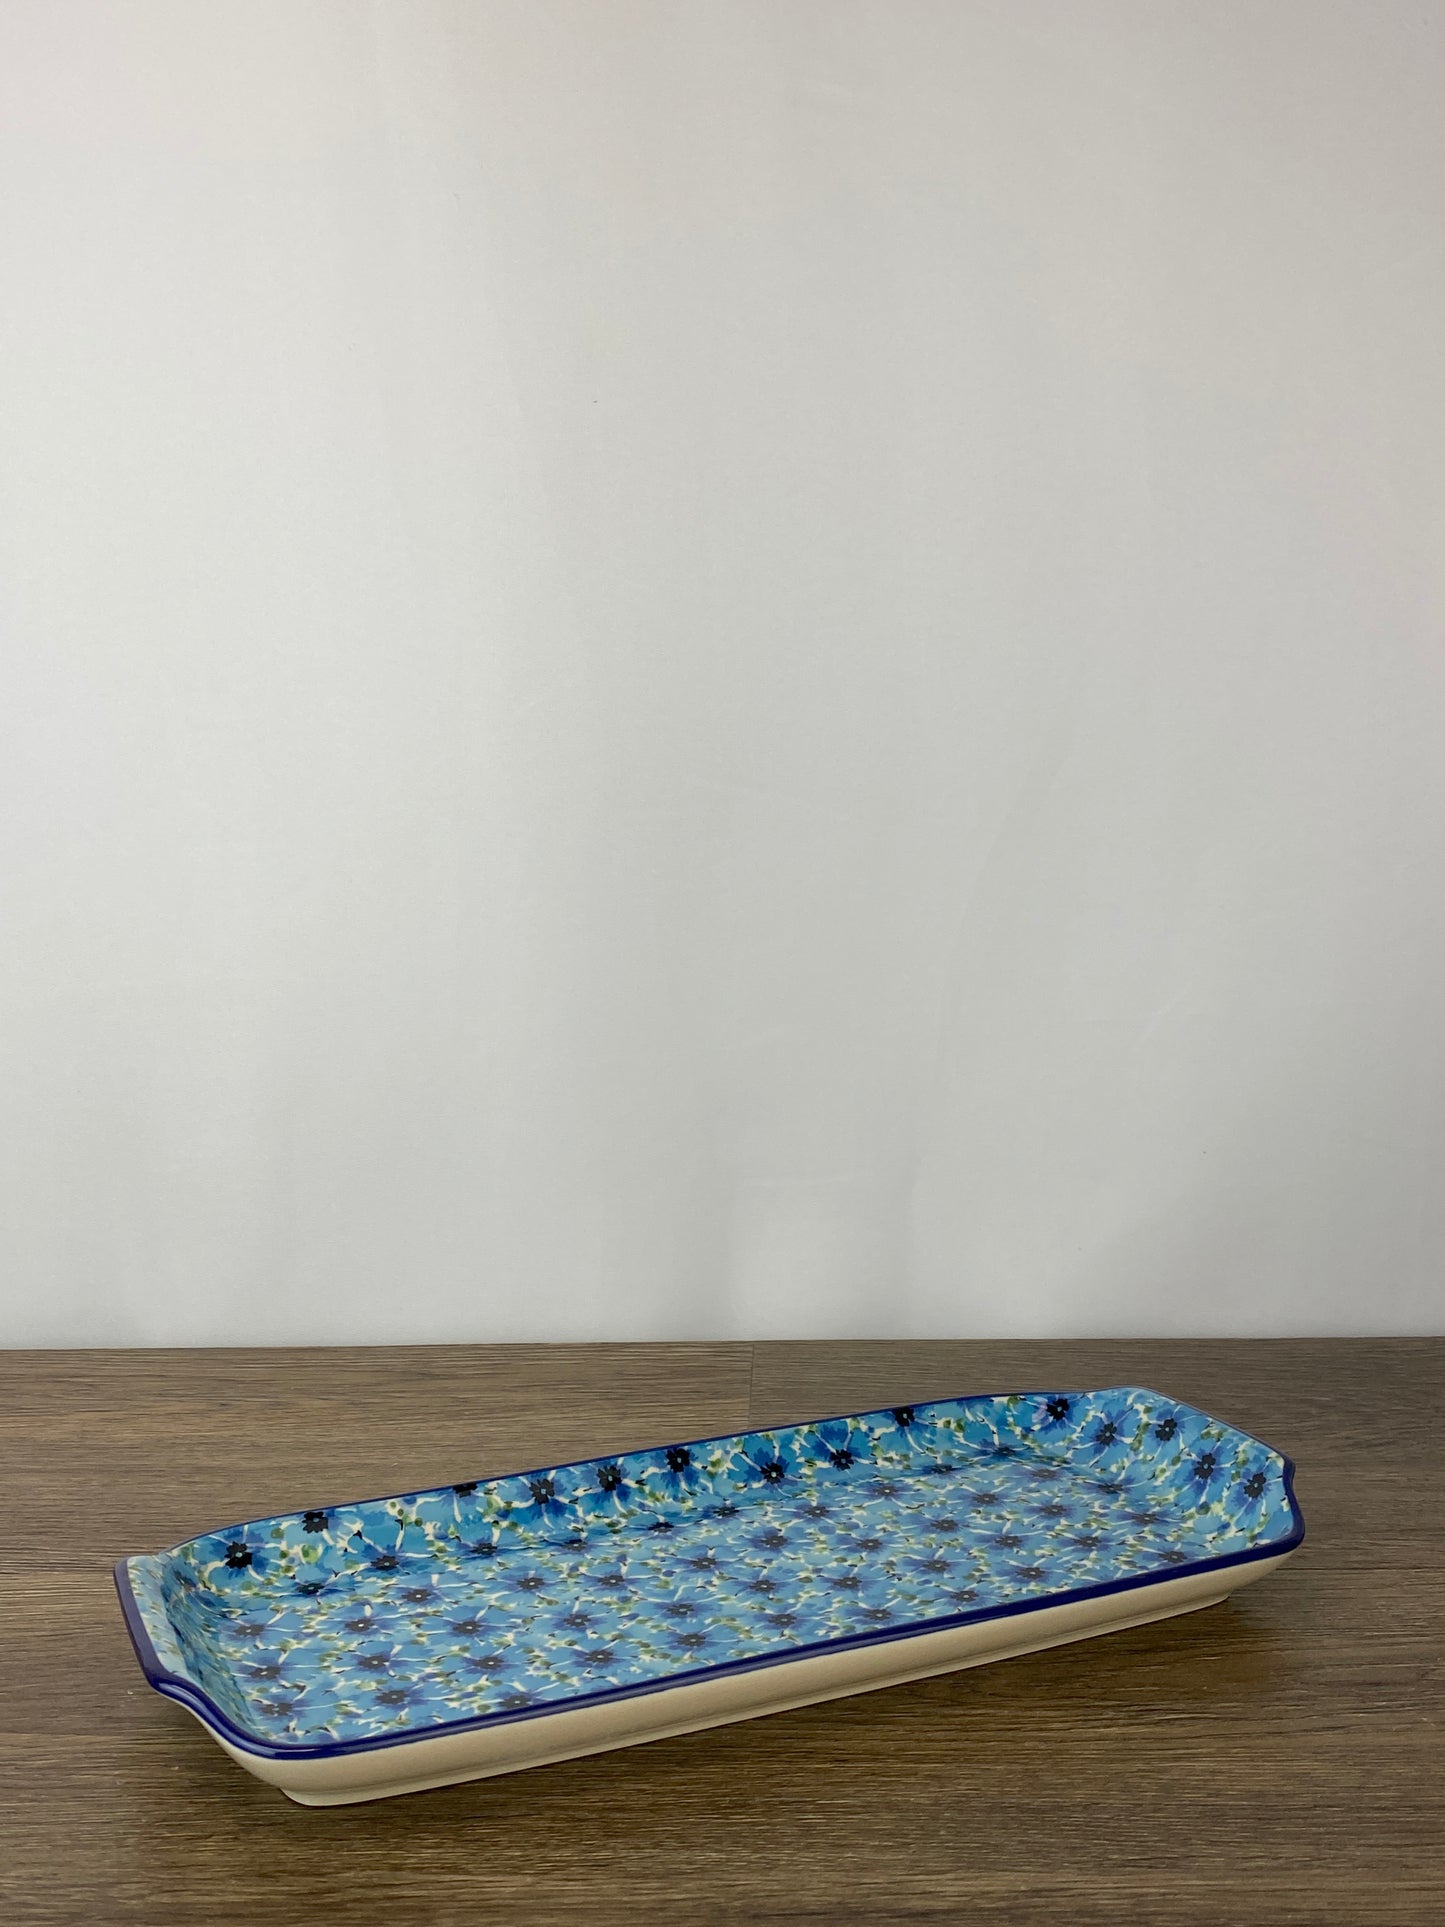 Unikat Bread Tray - Shape 410 - Pattern U4929